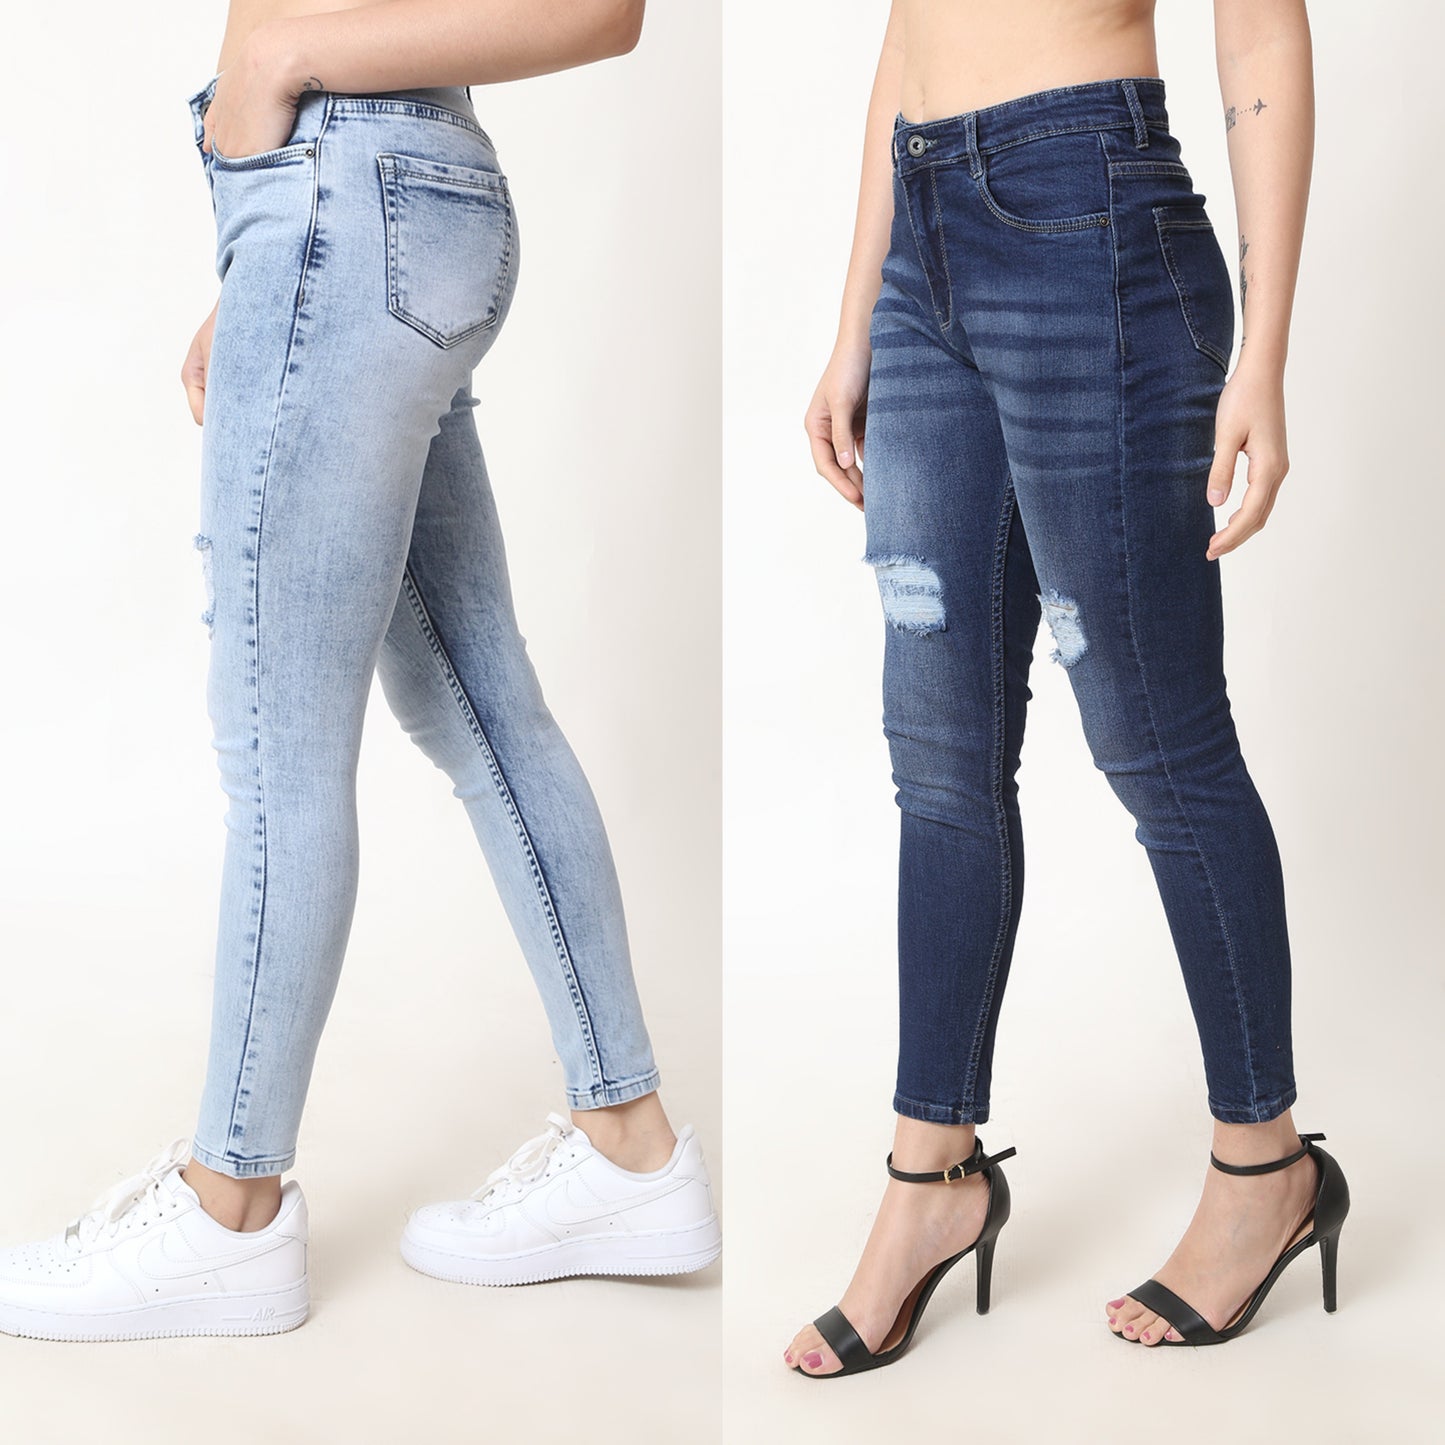 Women Combo Of Light & Dark Blue Skinny jeans